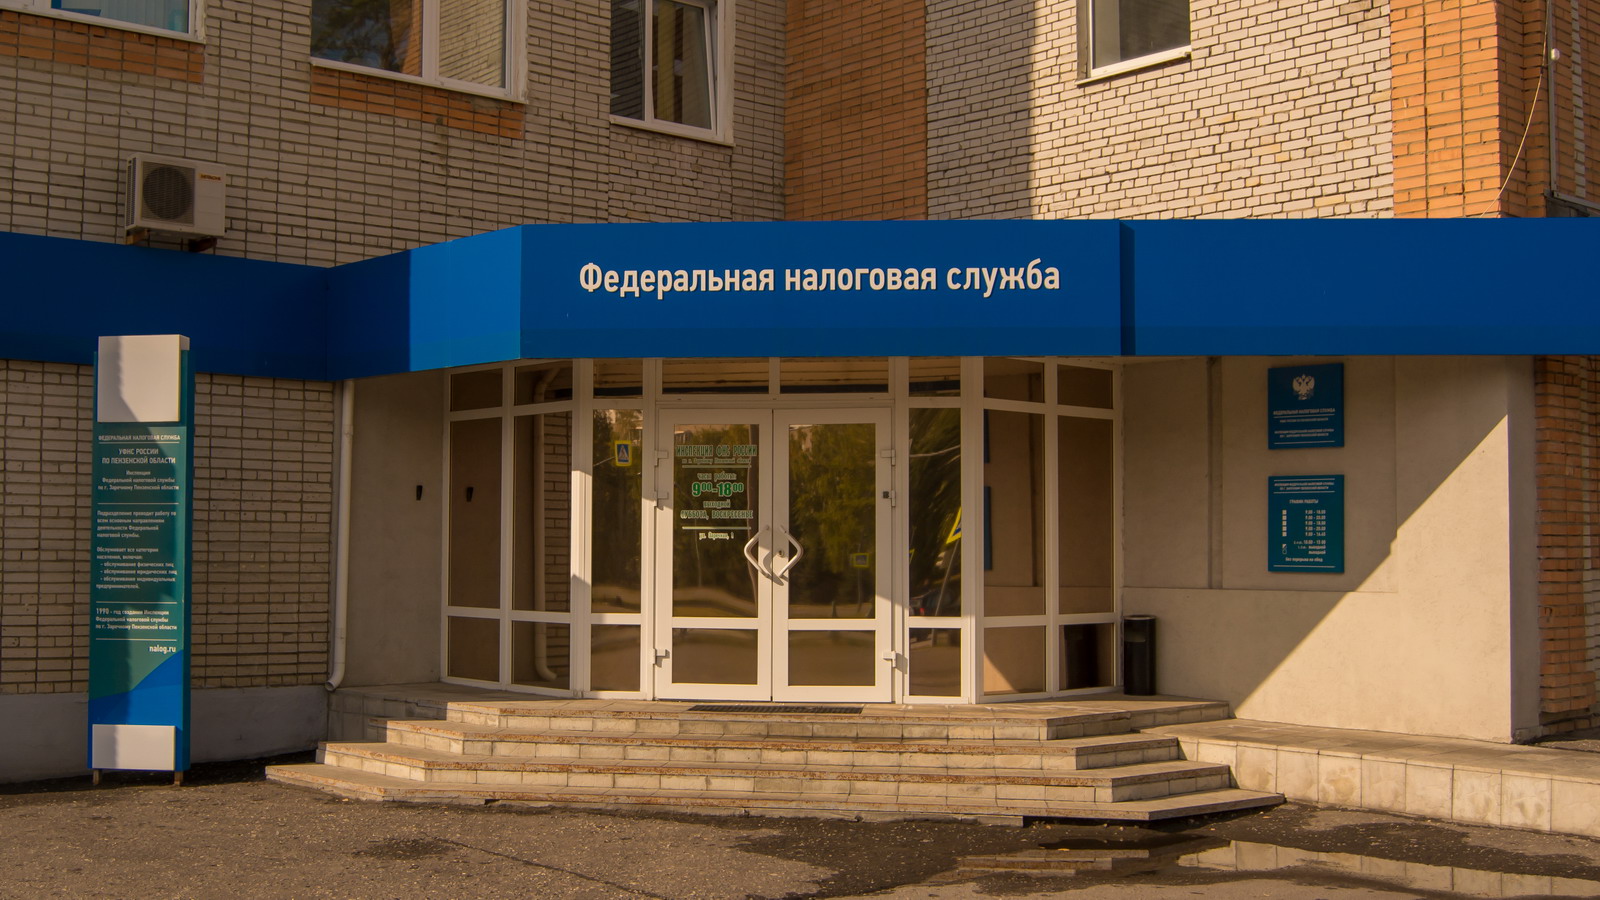 Вход в здание ИФНС России по г. Заречному Пензенской области